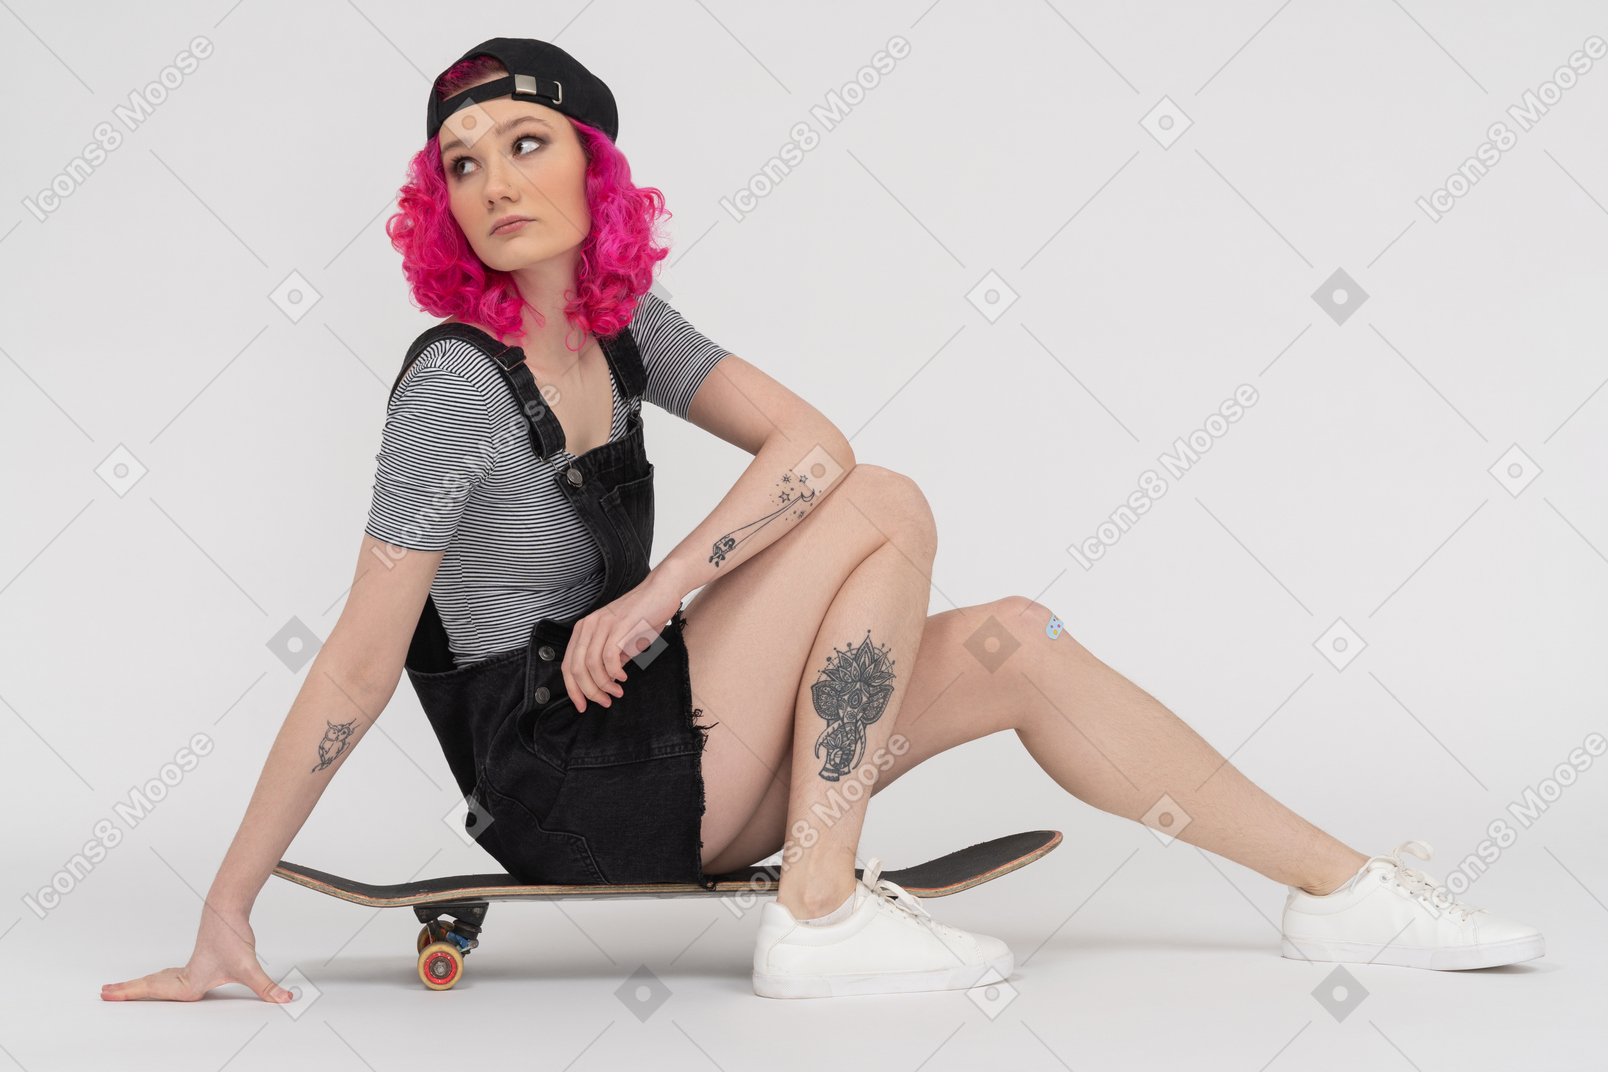 Татуированная девушка с розовыми волосами сидит на скейтборде